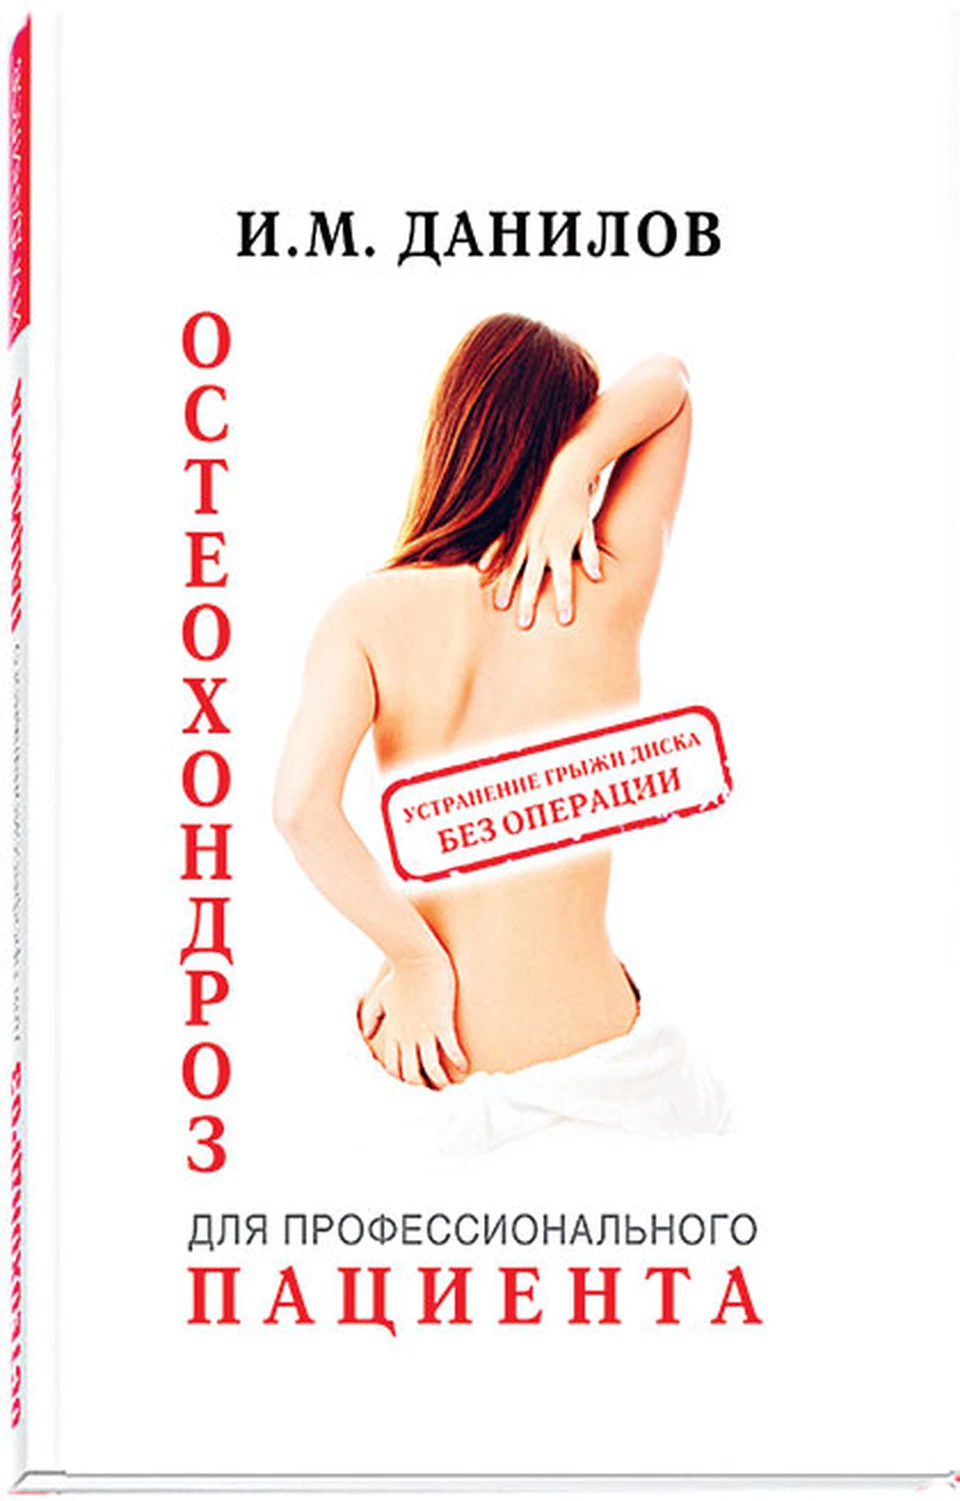 Книга «Остеохондроз для профессионального пациента» стала за короткий срок медицинским бестселлером.